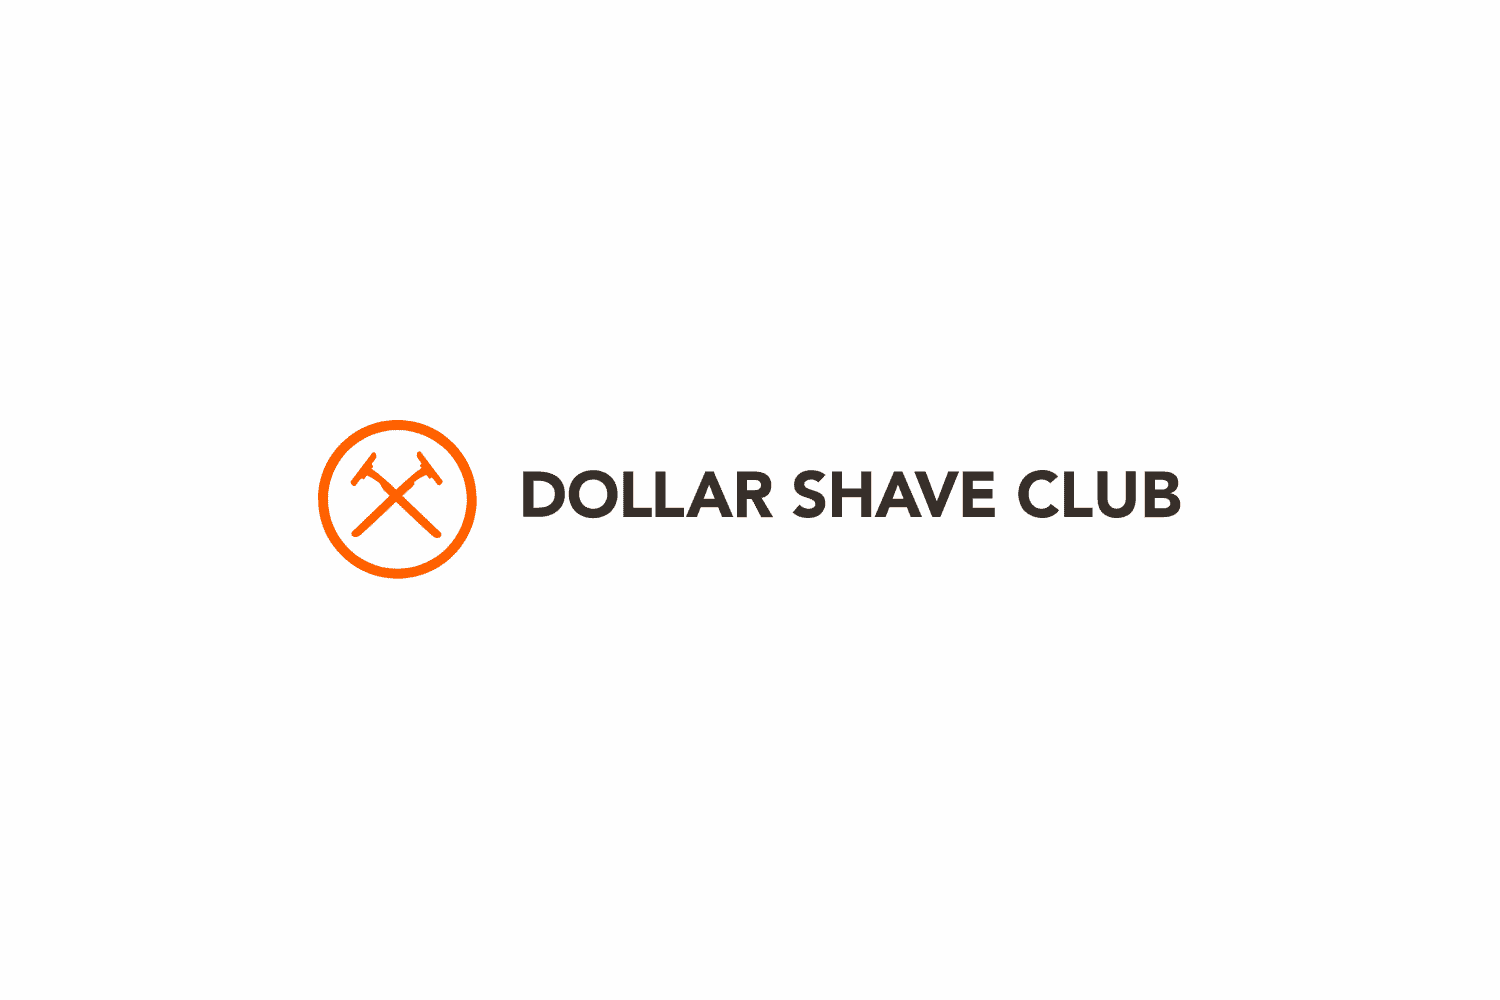 Clube de barbear dólar